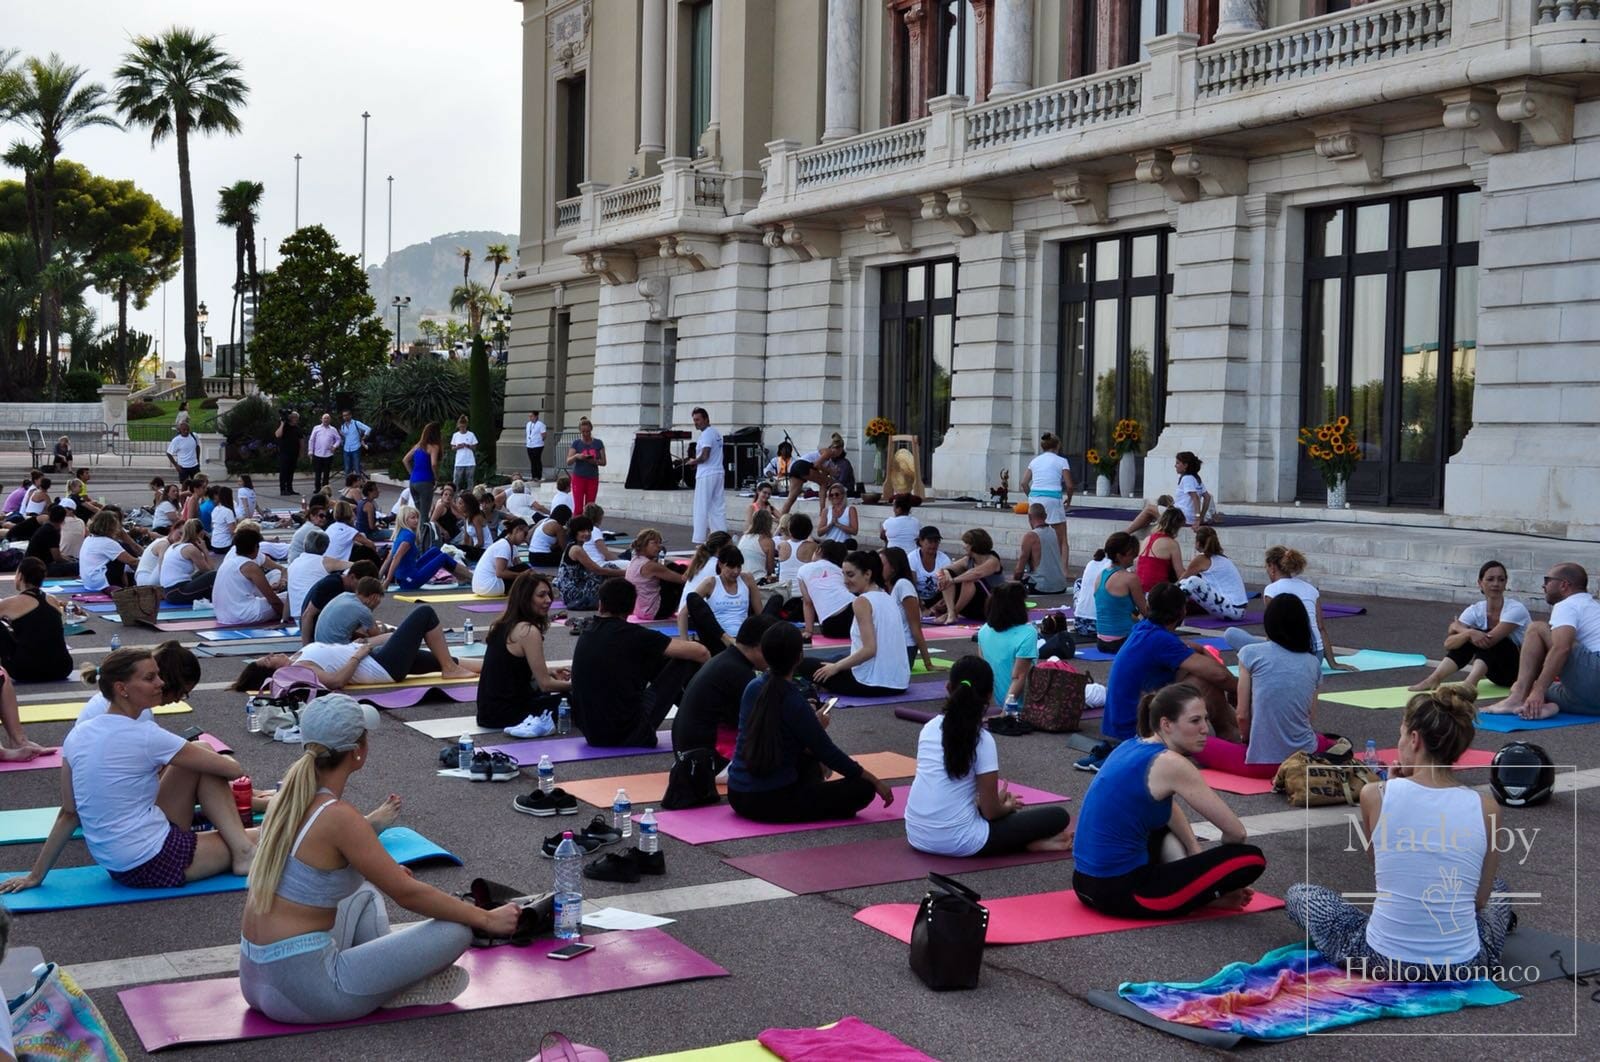 Yoga Solstice на террасе Казино Монте-Карло - баланс для всех